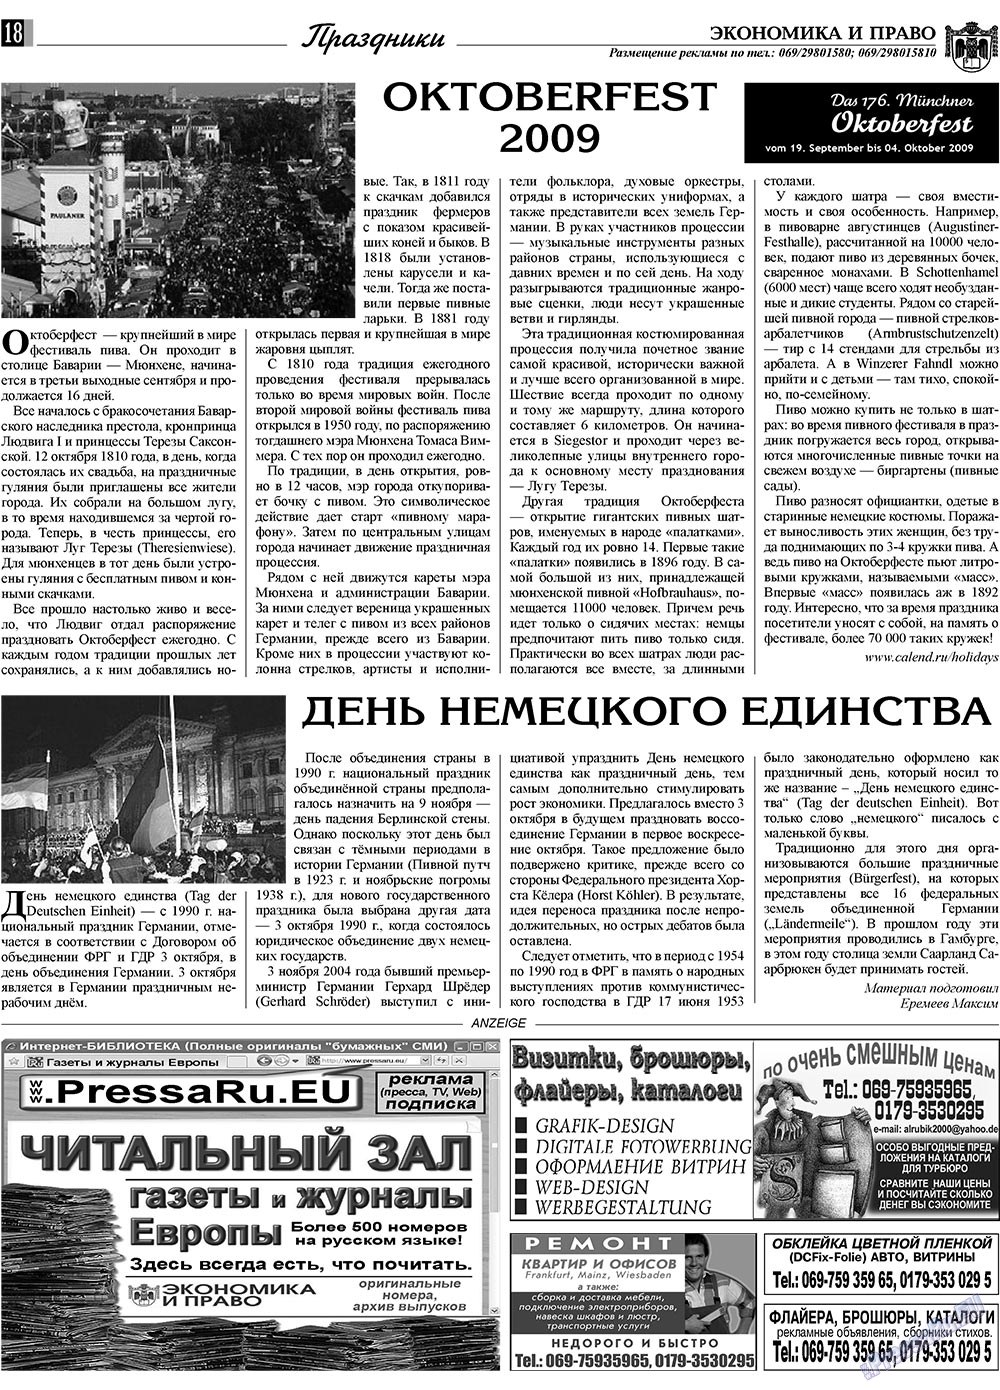 Экономика и право, газета. 2009 №10 стр.18